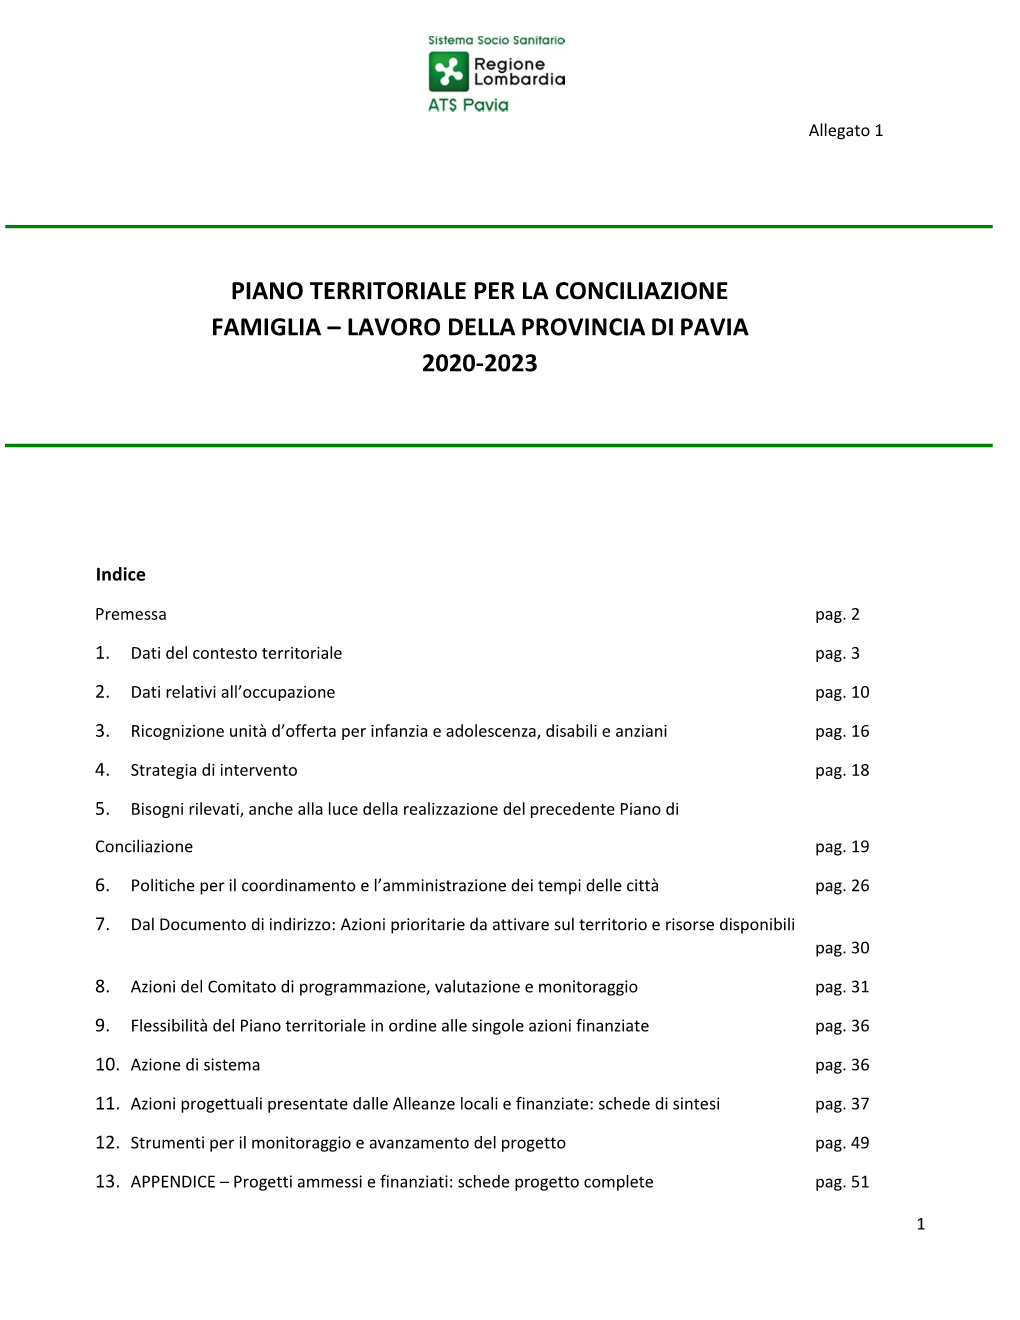 Piano Territoriale Per La Conciliazione Famiglia – Lavoro Della Provincia Di Pavia 2020-2023